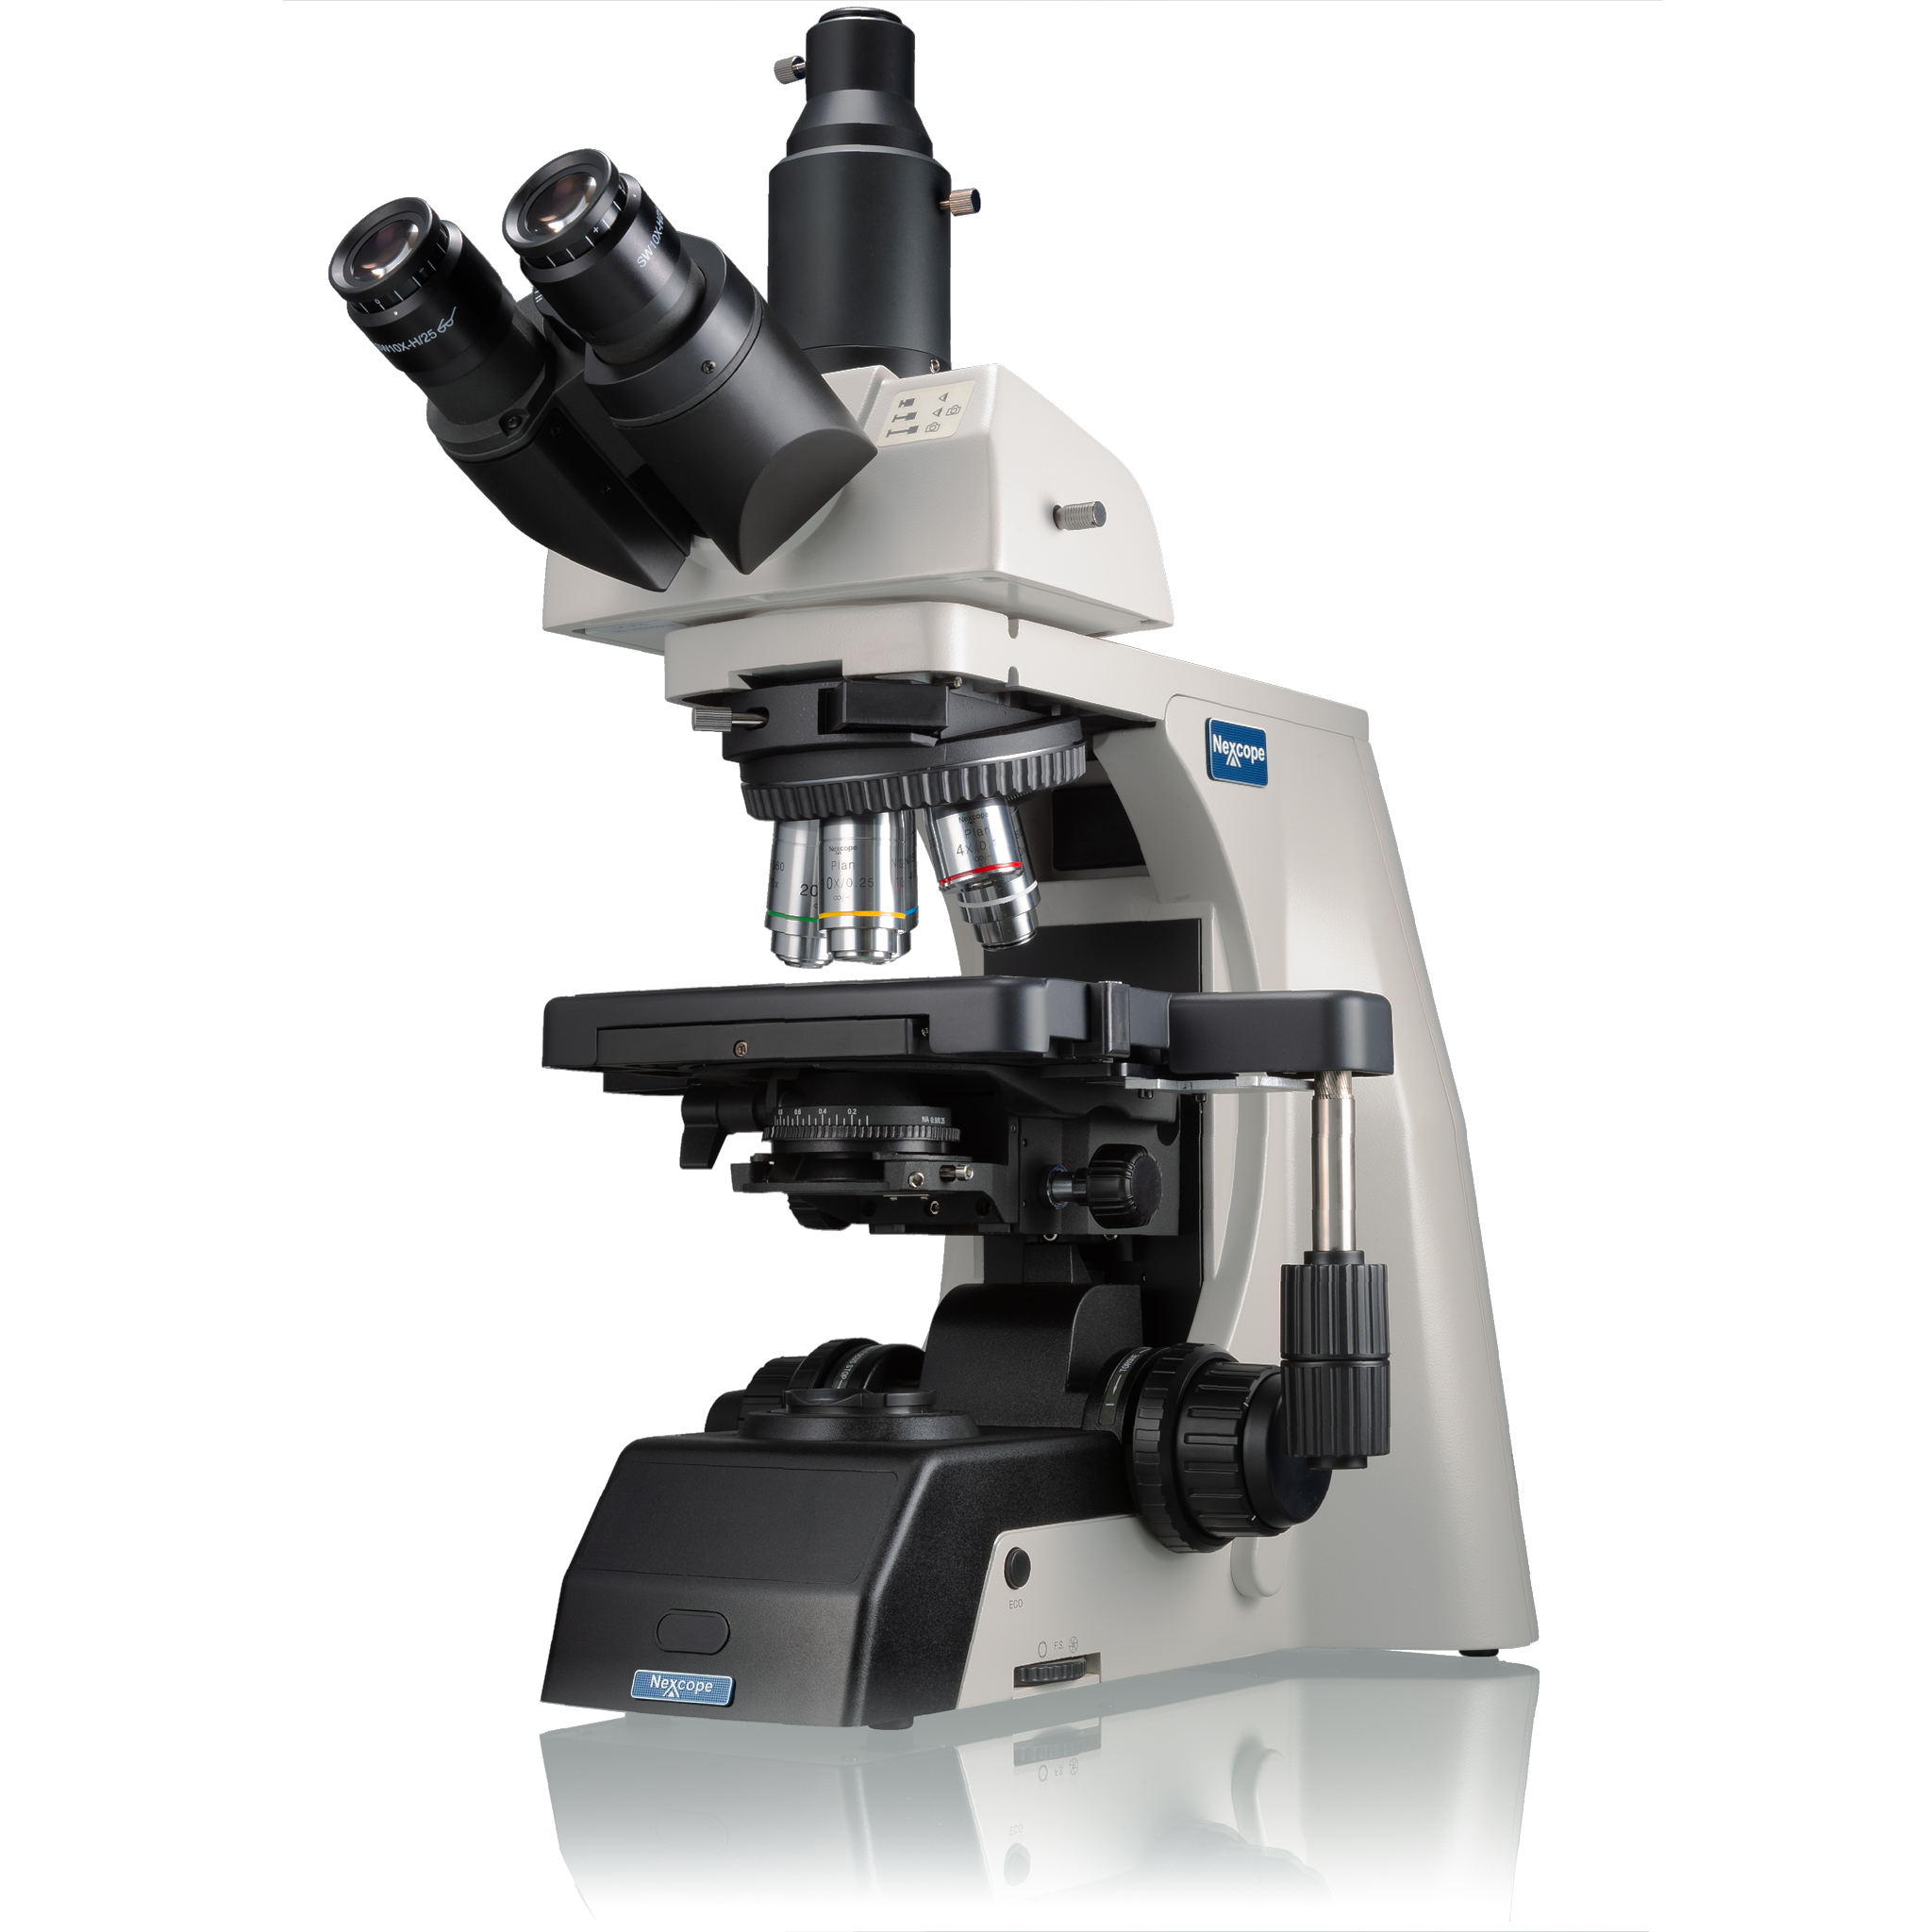 Microscopio da laboratorio professionale Nexcope NE910 con possibilità di collegare tanti accessori